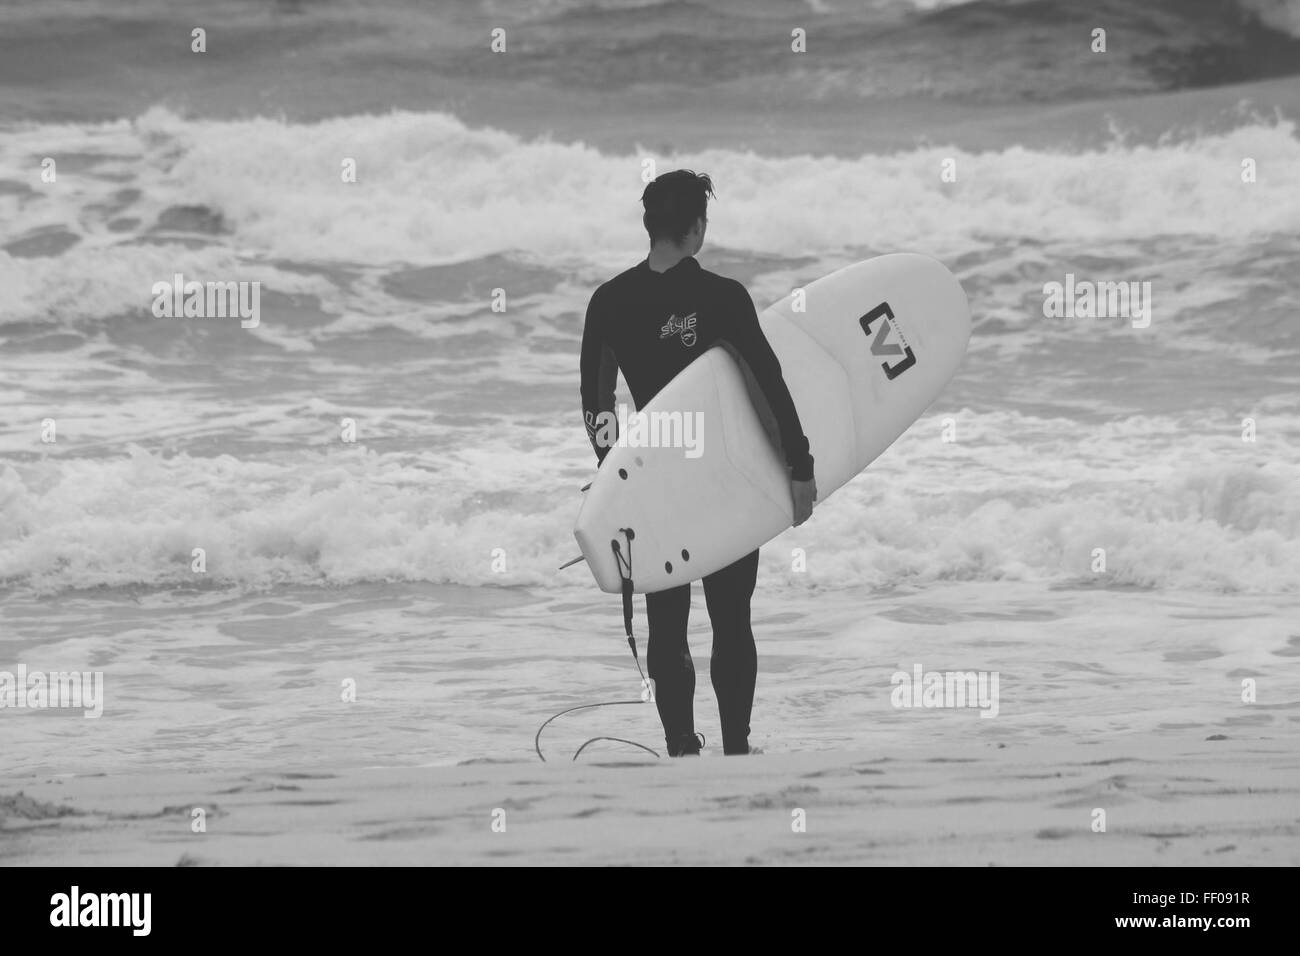 Strand menschlichen Monochrom Ocean Shore Surfbrett Surfer Flut Wasser Neoprenanzug schwarz und weiß im freien Person stehende Wellen zum Surfen Stockfoto